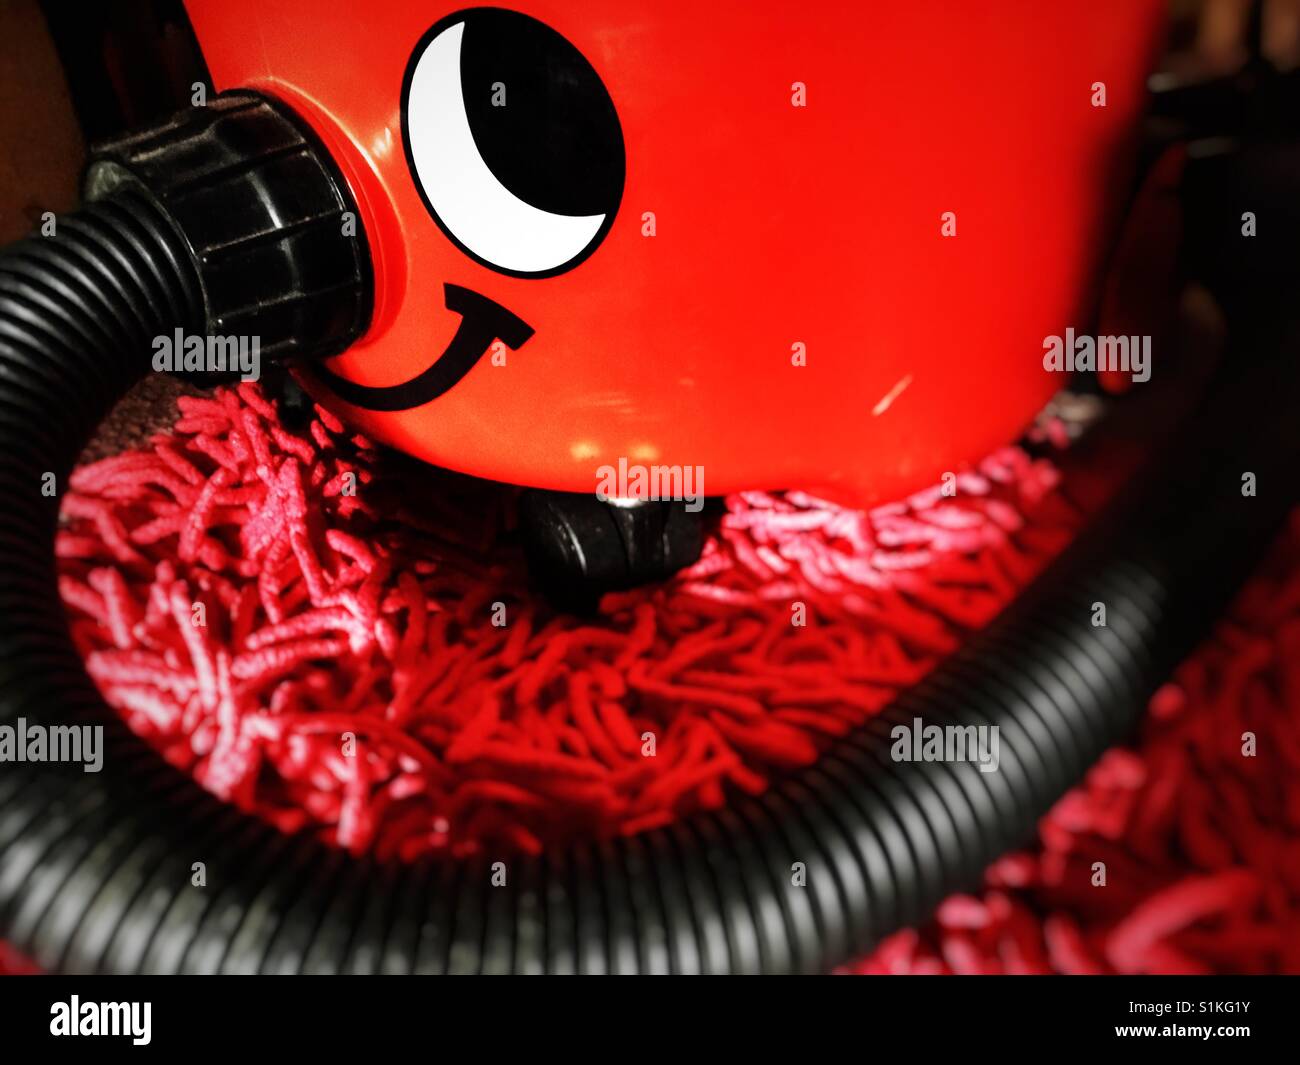 Vacuum cleaner Stock Photo